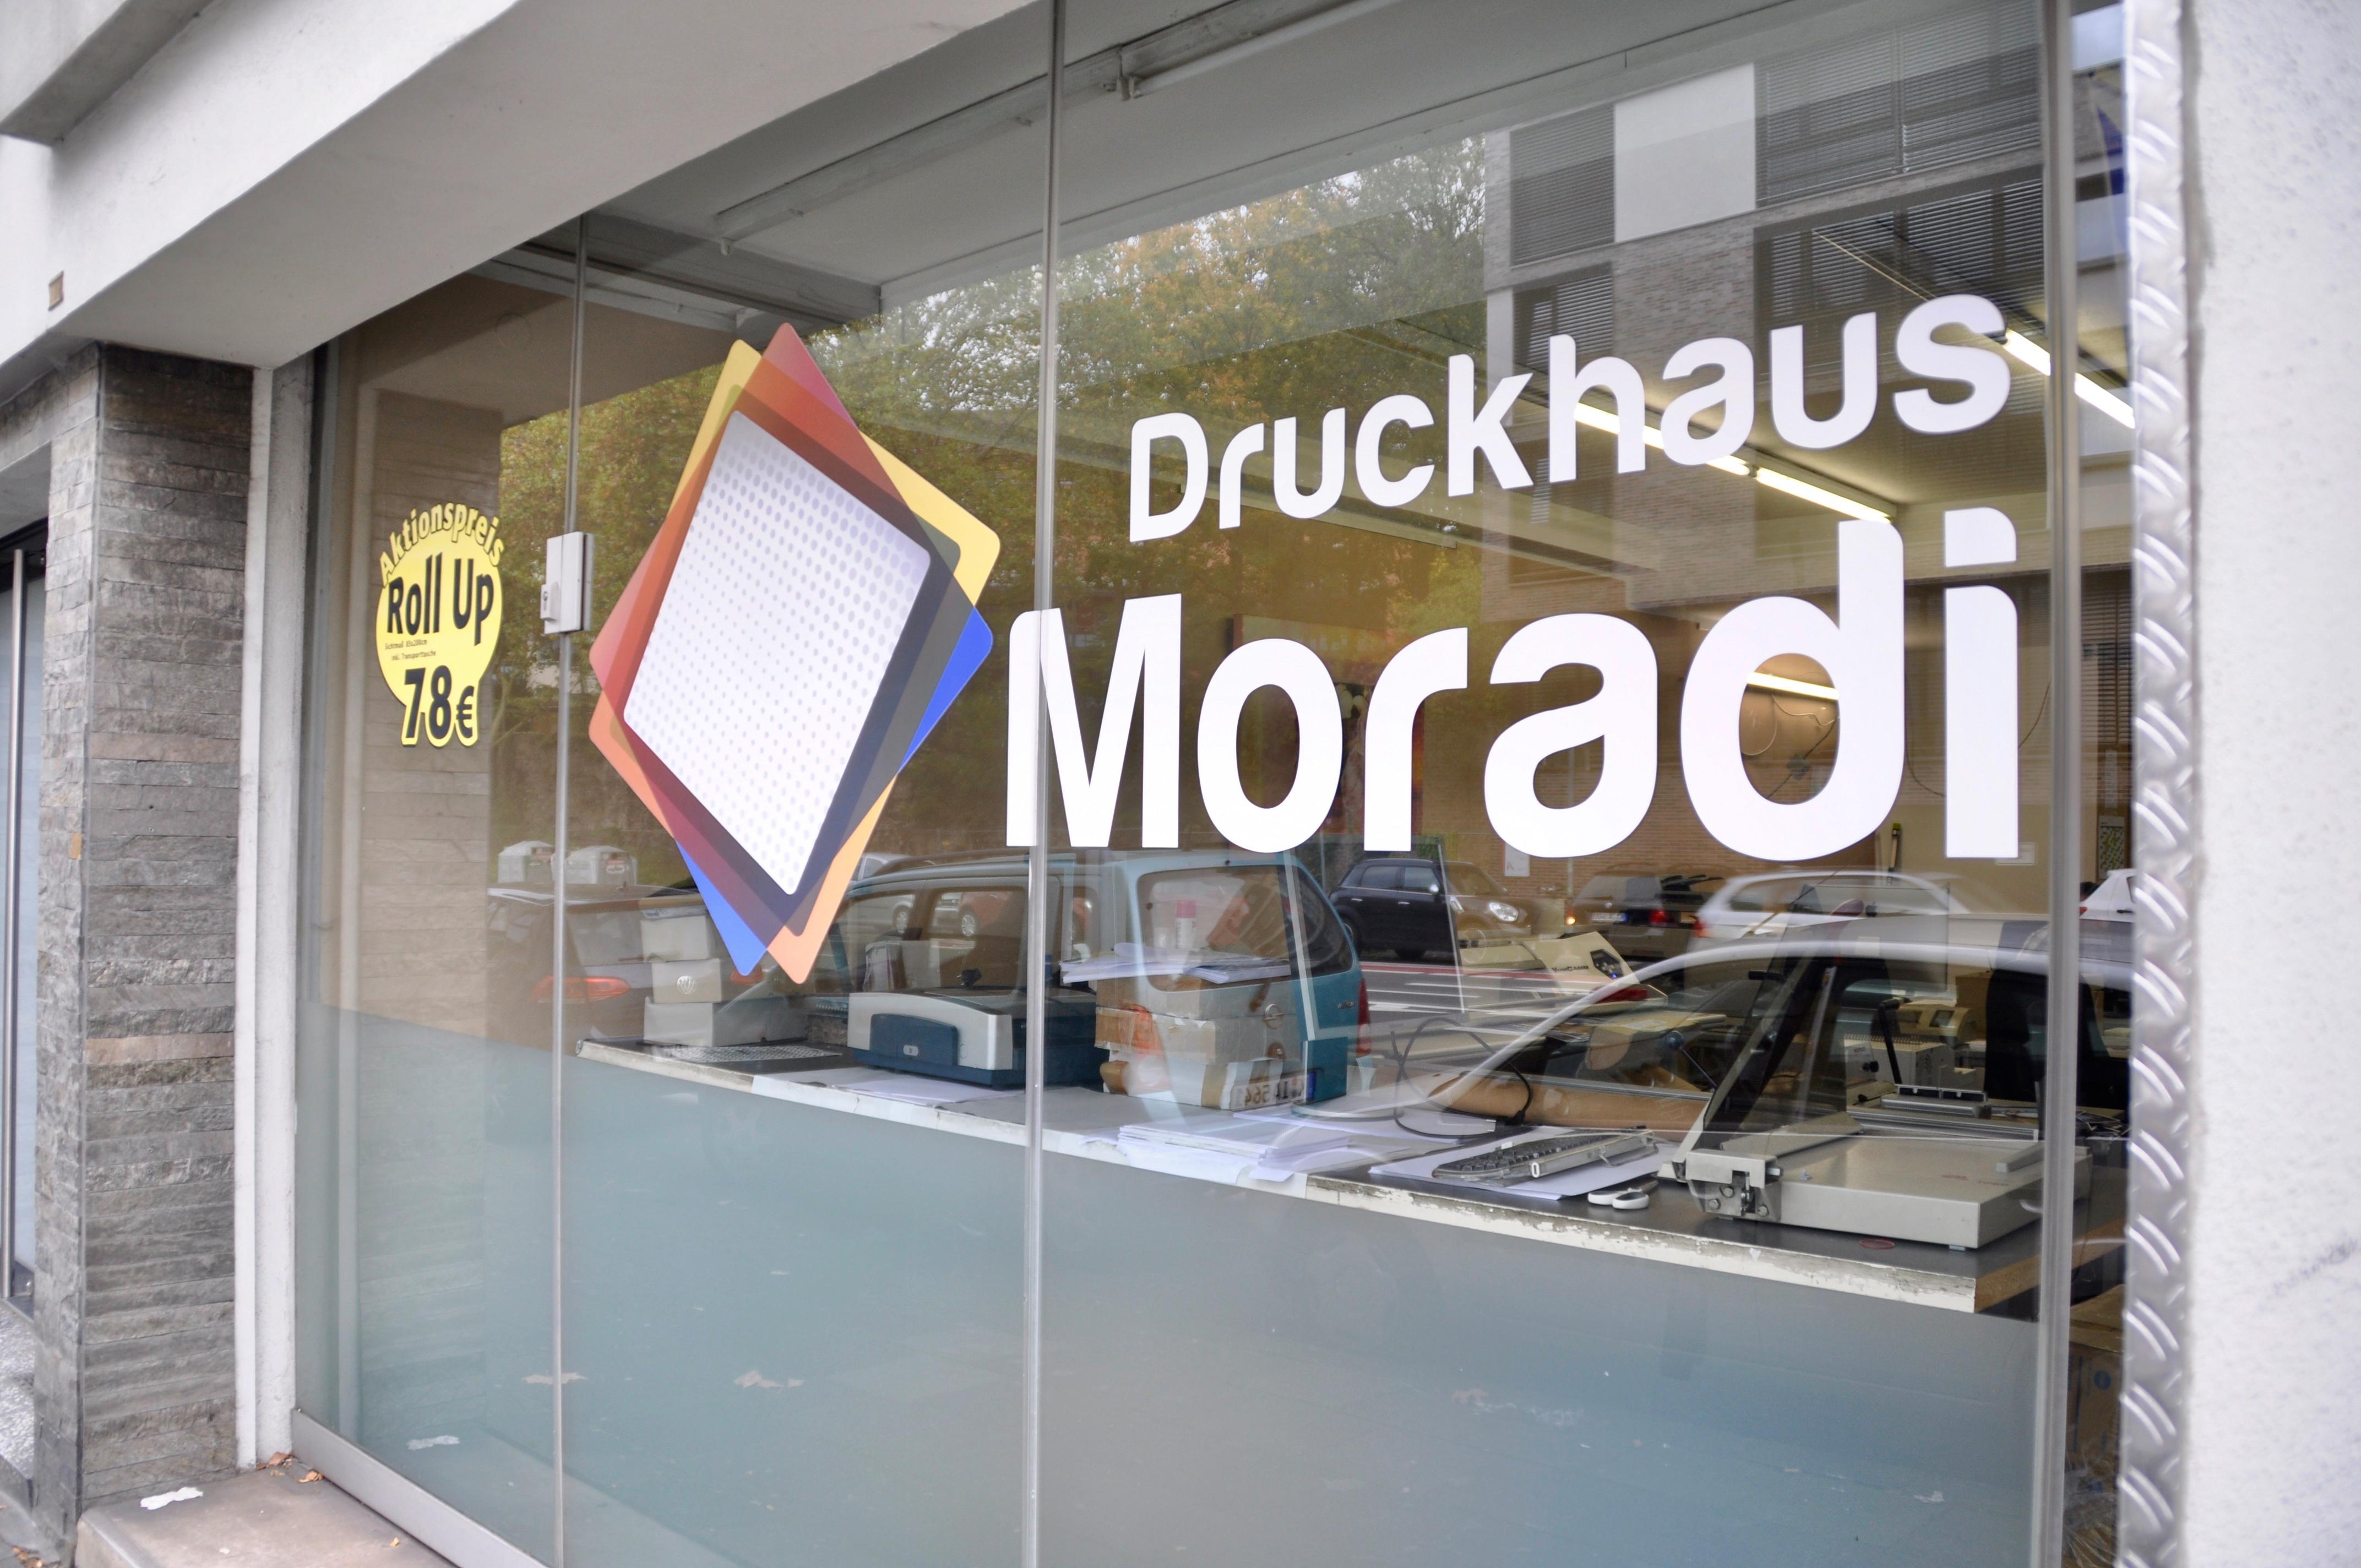 Druckhaus Moradi